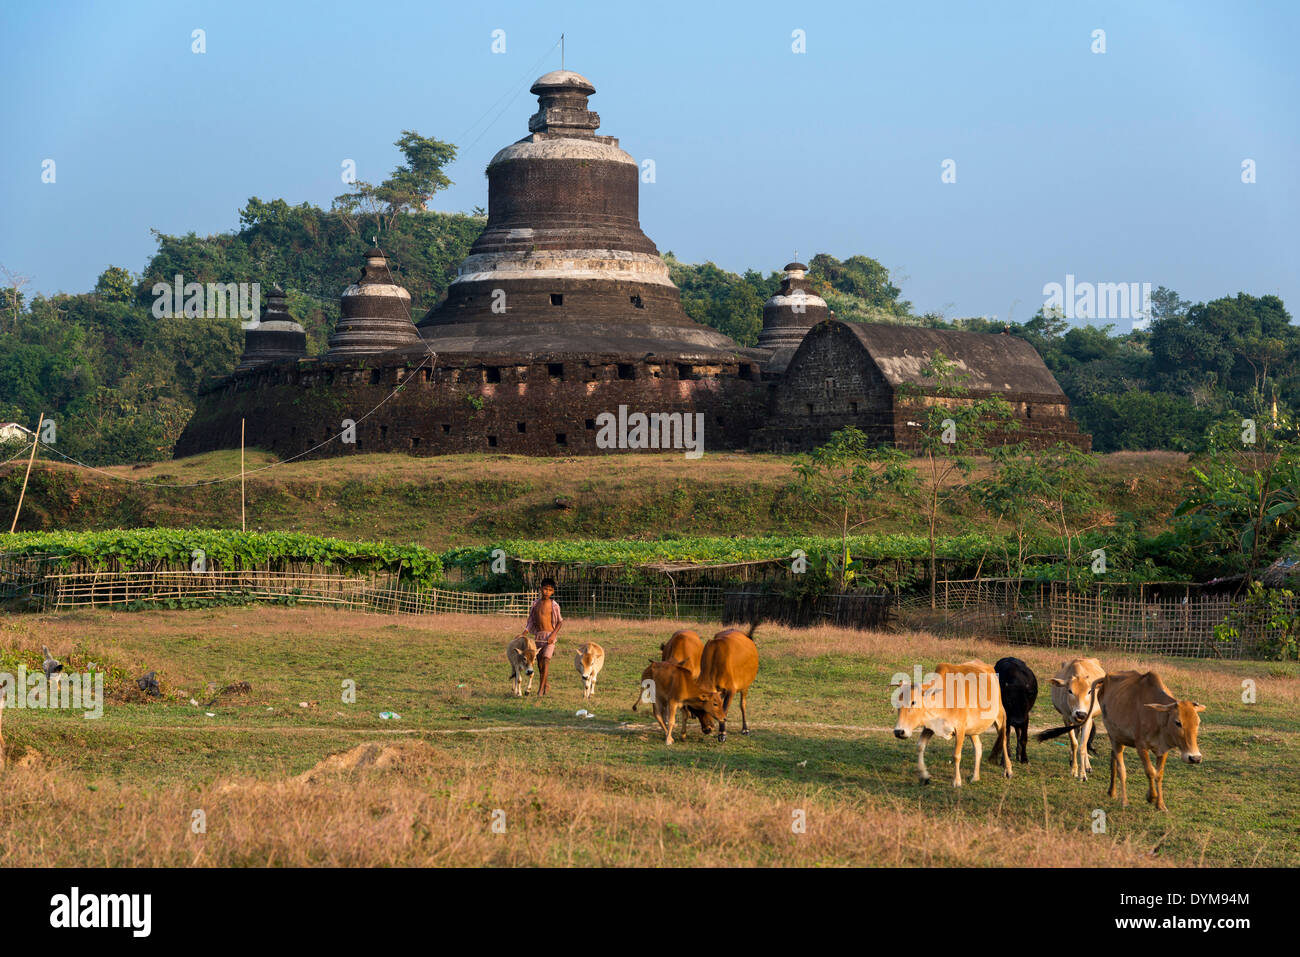 Hirtenjunge mit Rindern vor Htukkanthein, Dukkanthein oder Htoekanthein Tempel, Mrauk U, Sittwe Division, Rakhine State Stockfoto